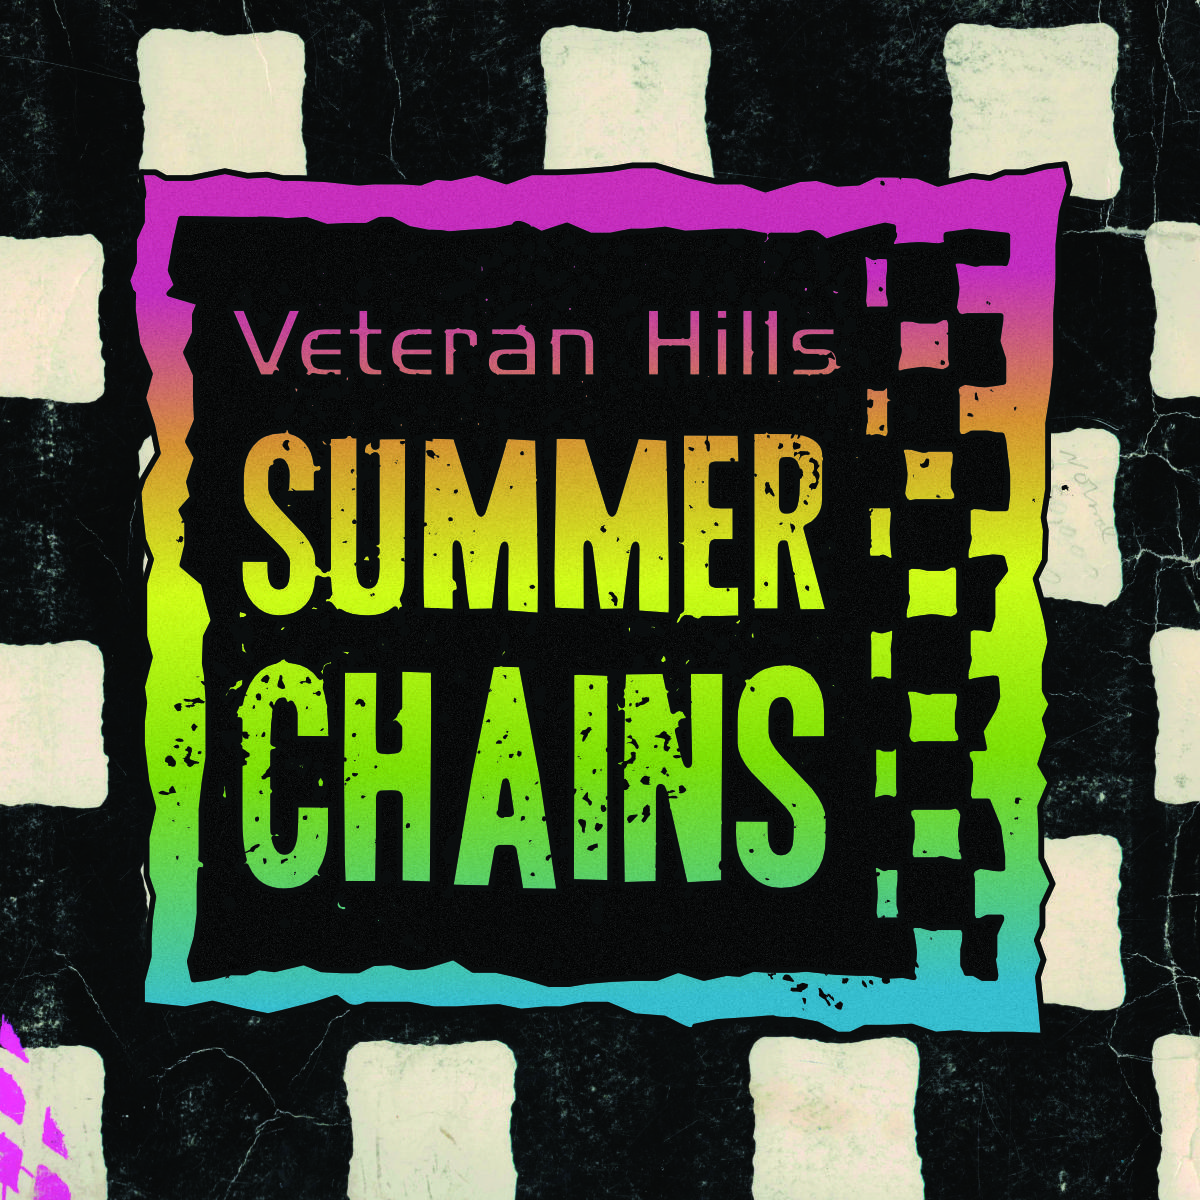 Veteran Hills Summer Chains: Event Three